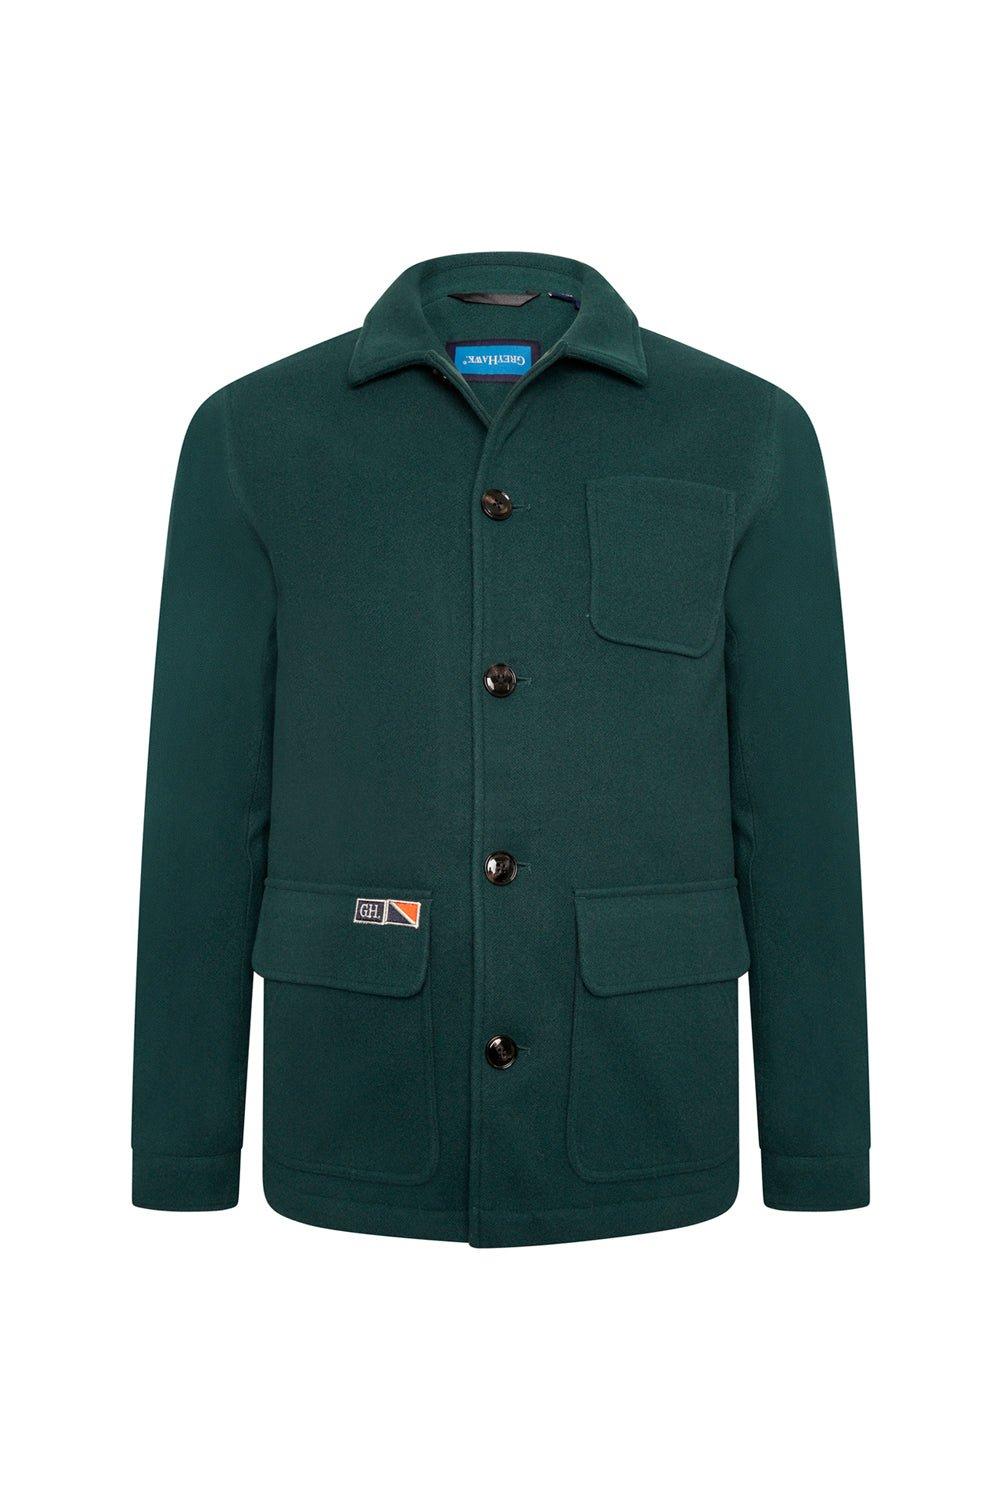 Экстра-высокая куртка в стиле рабочей одежды серого цвета Hawk Grey Hawk, зеленый